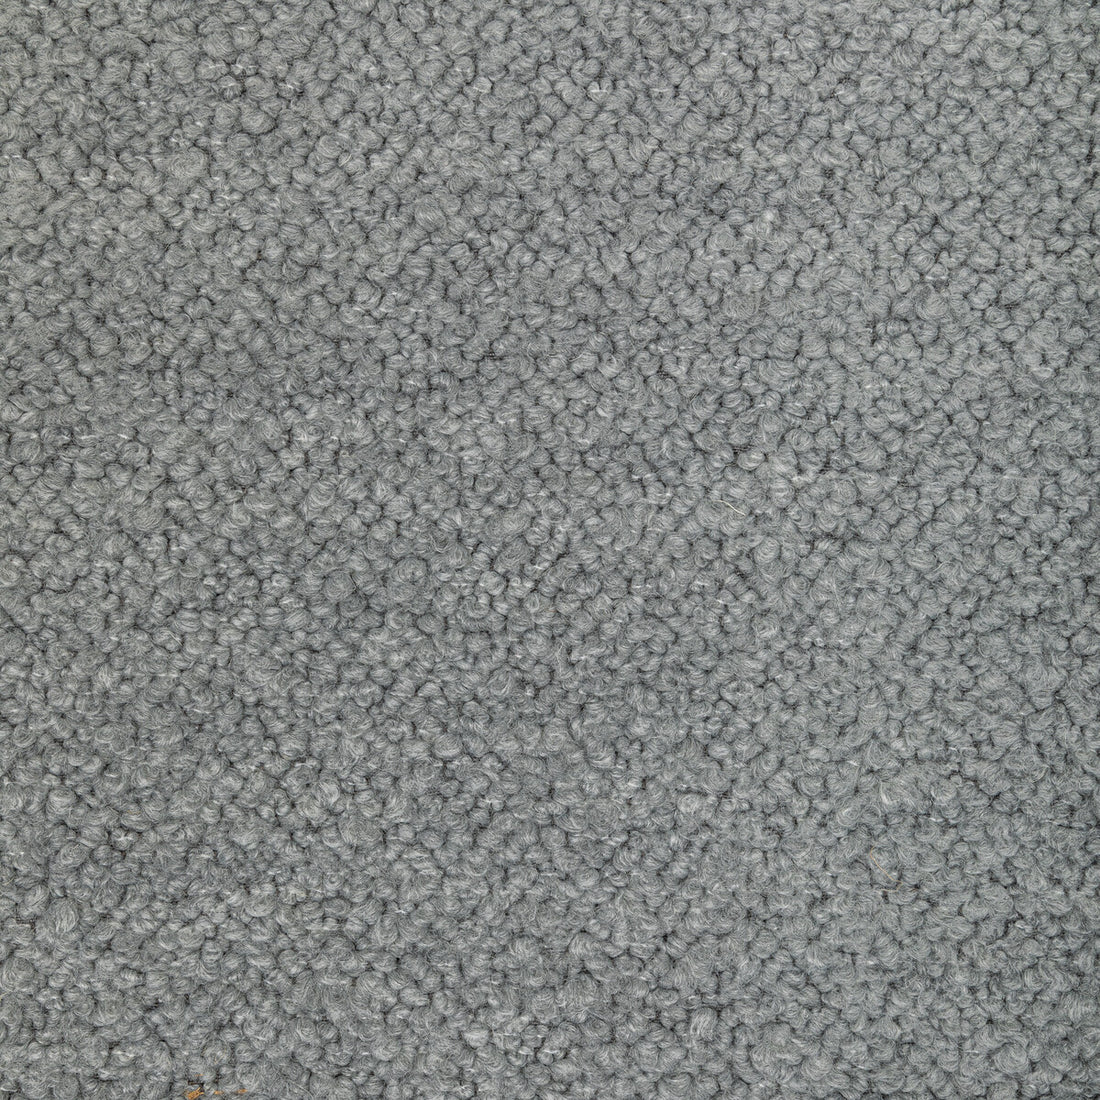 Kravet Design fabric in 36348-11 color - pattern 36348.11.0 - by Kravet Design